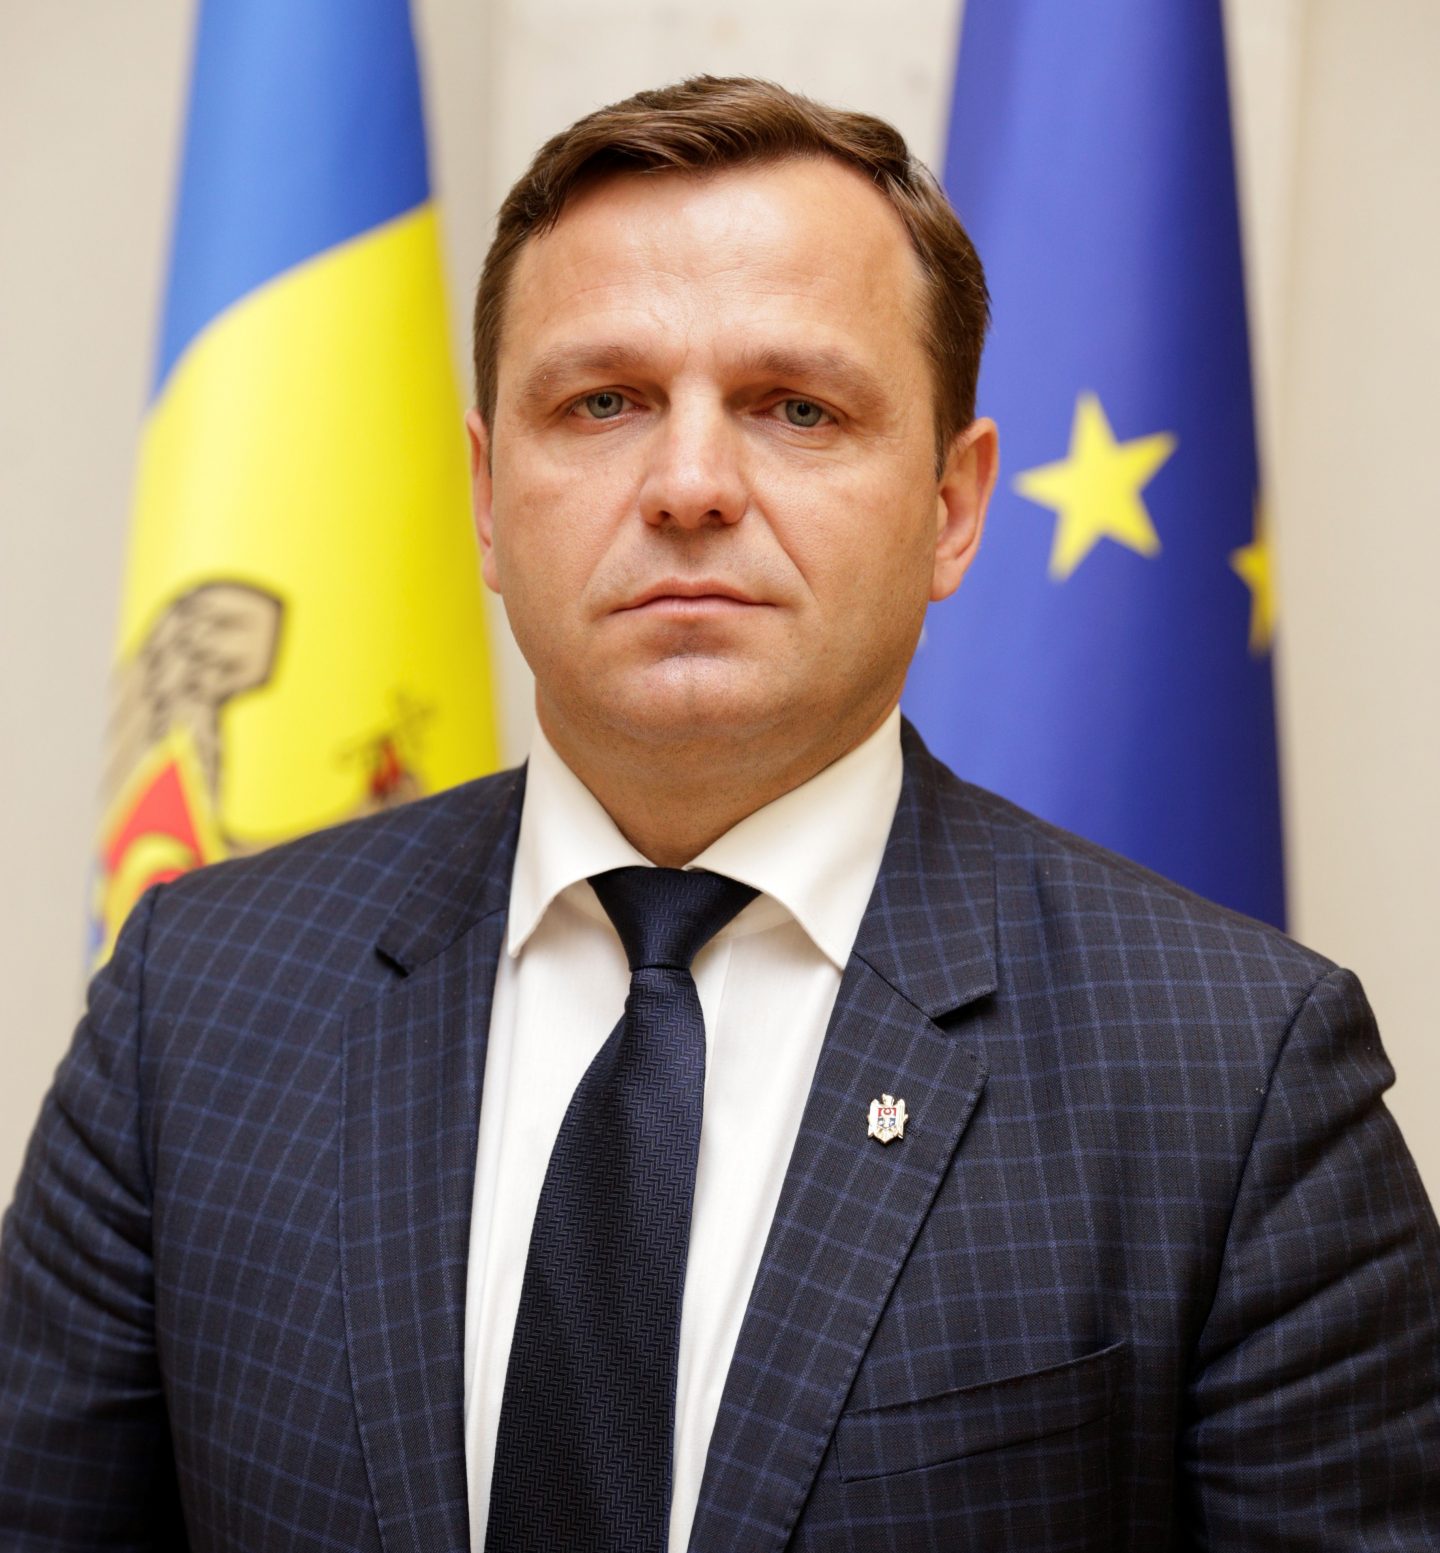 Andrei Năstase îi cere, oficial, Maiei Sandu să se retragă din cursa prezidențială